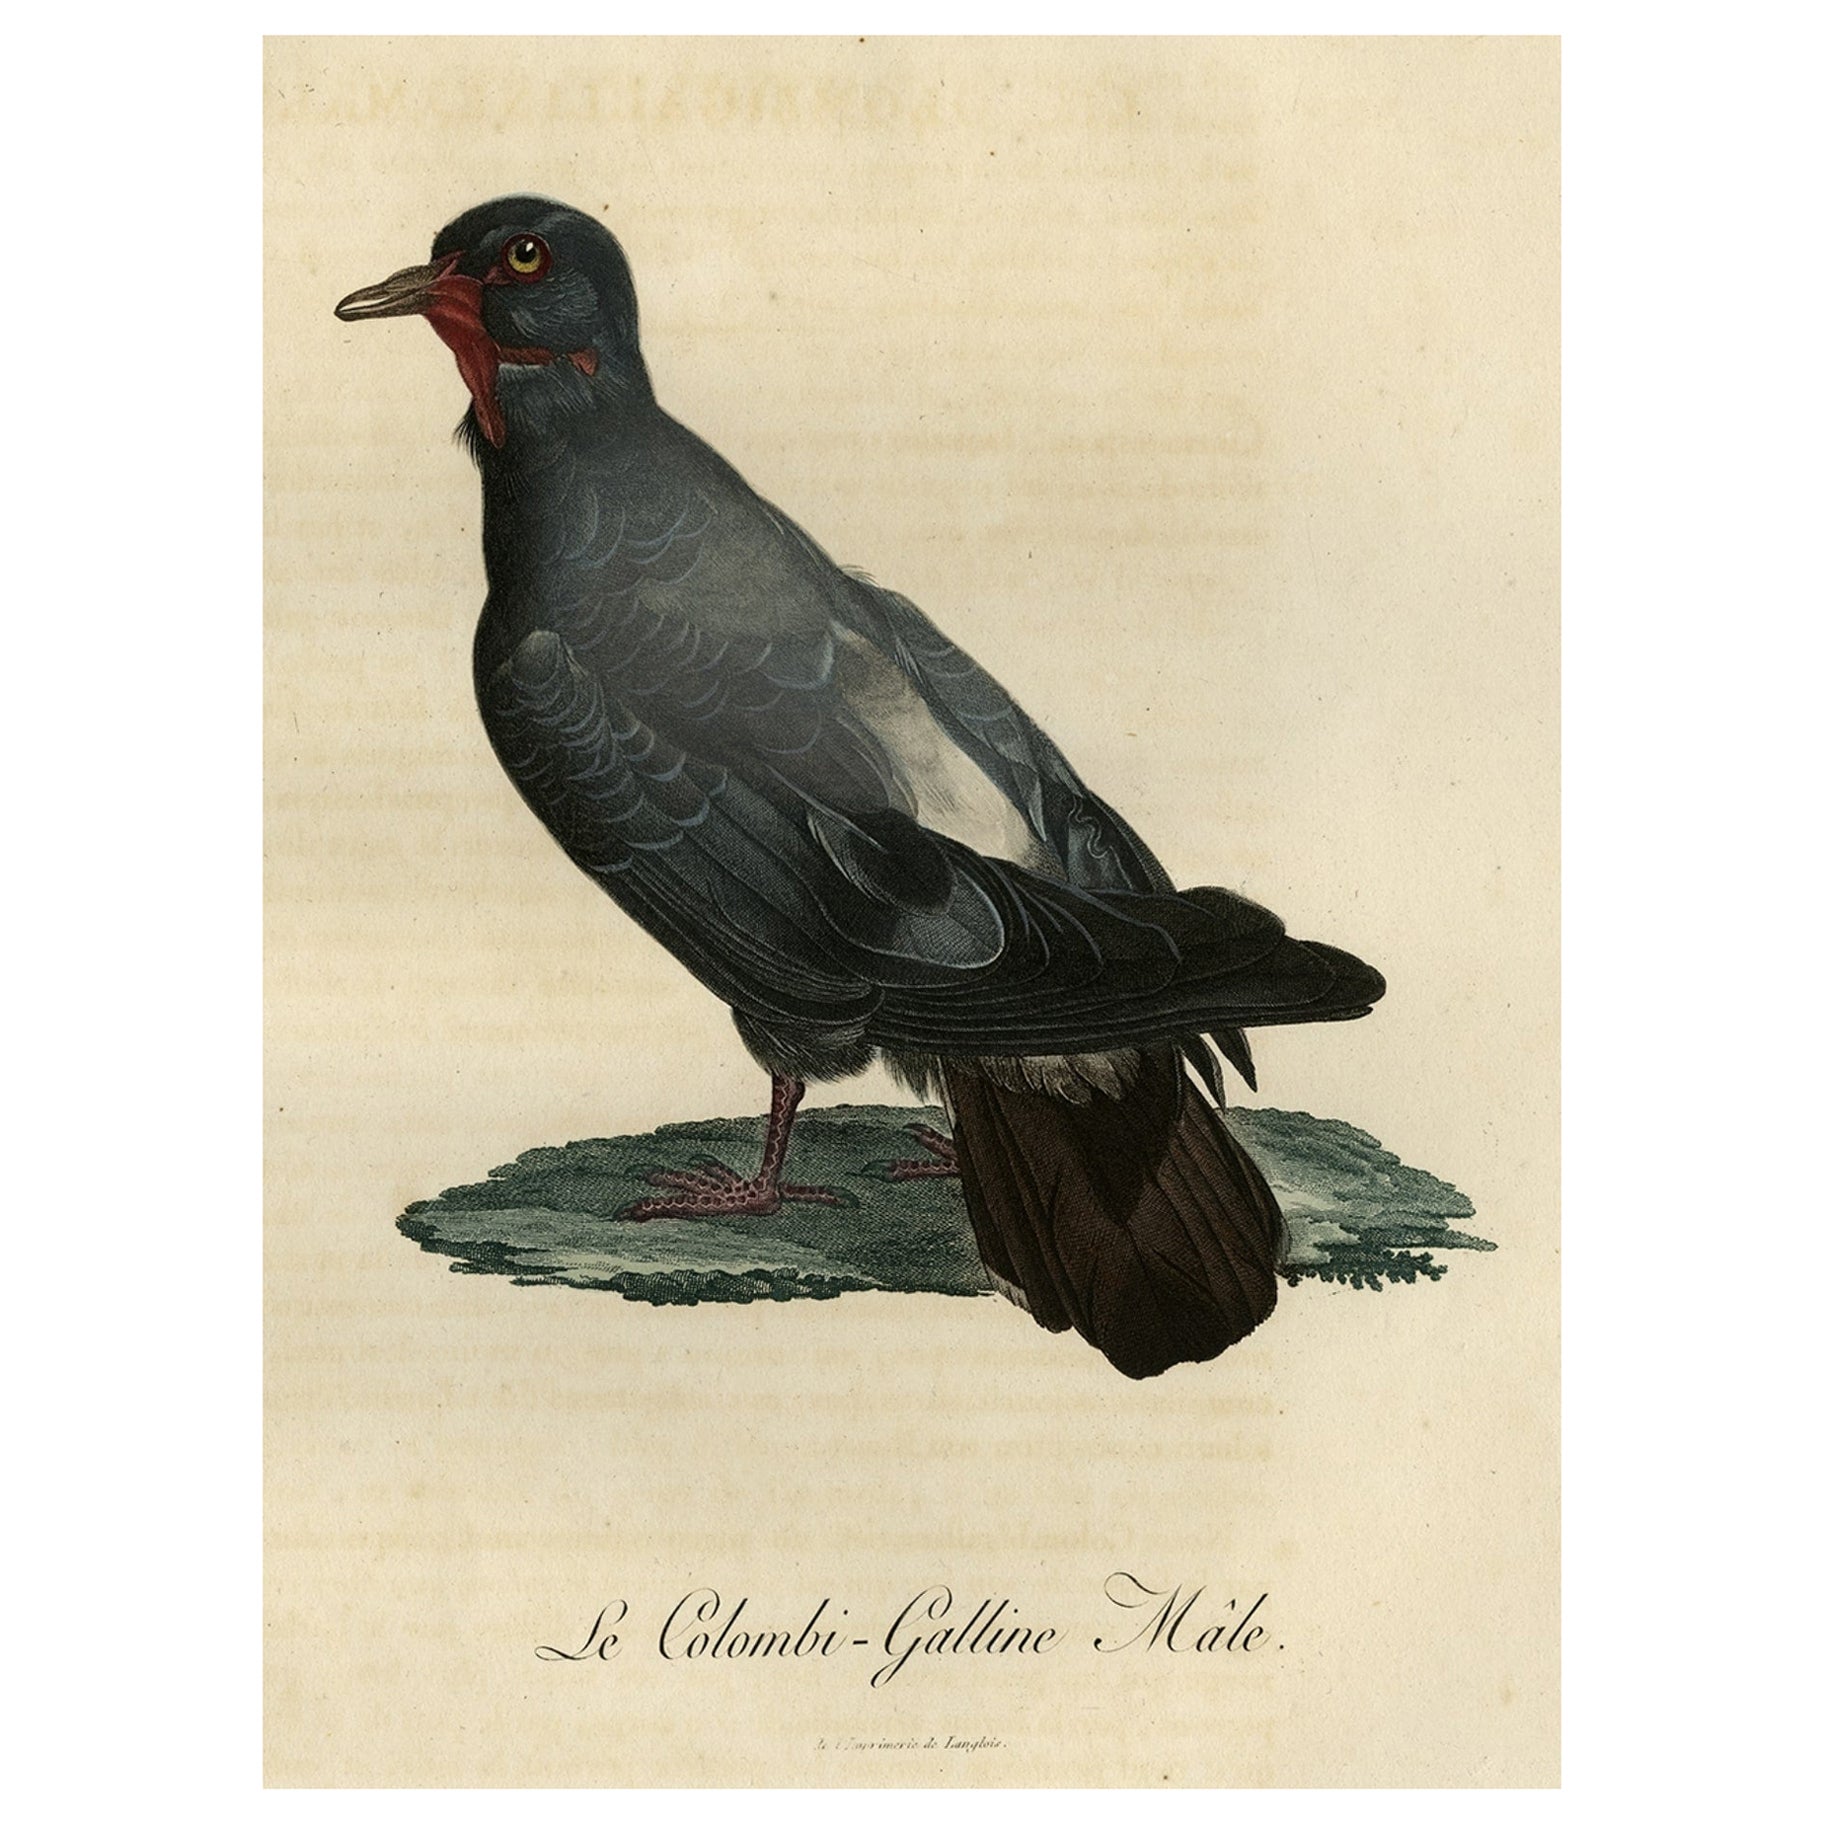 Antiker handkolorierter Vogeldruck einer Taube mit dem Namen Le Colombi-Galline, männlich, 1800